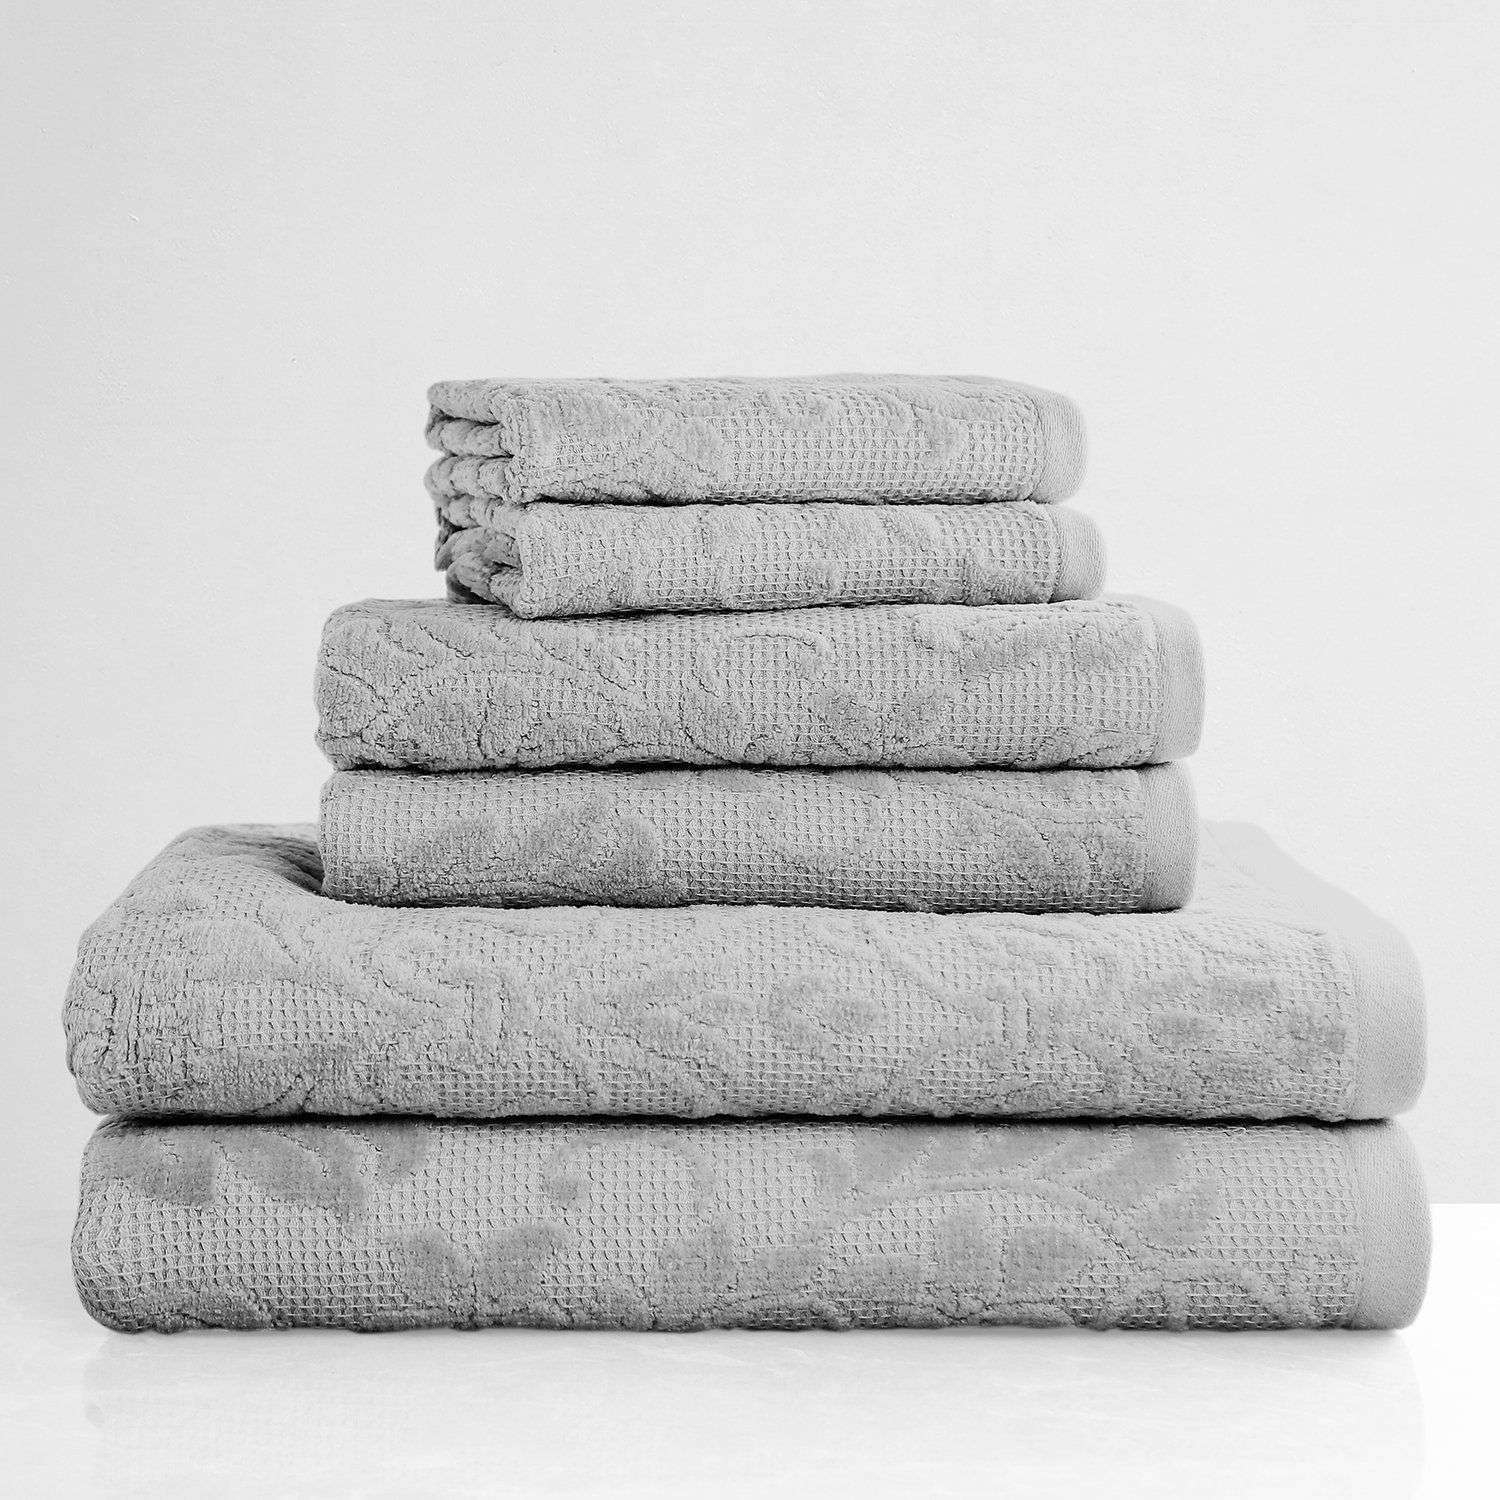 Egyptian Cotton Luxury Bath Towel, White